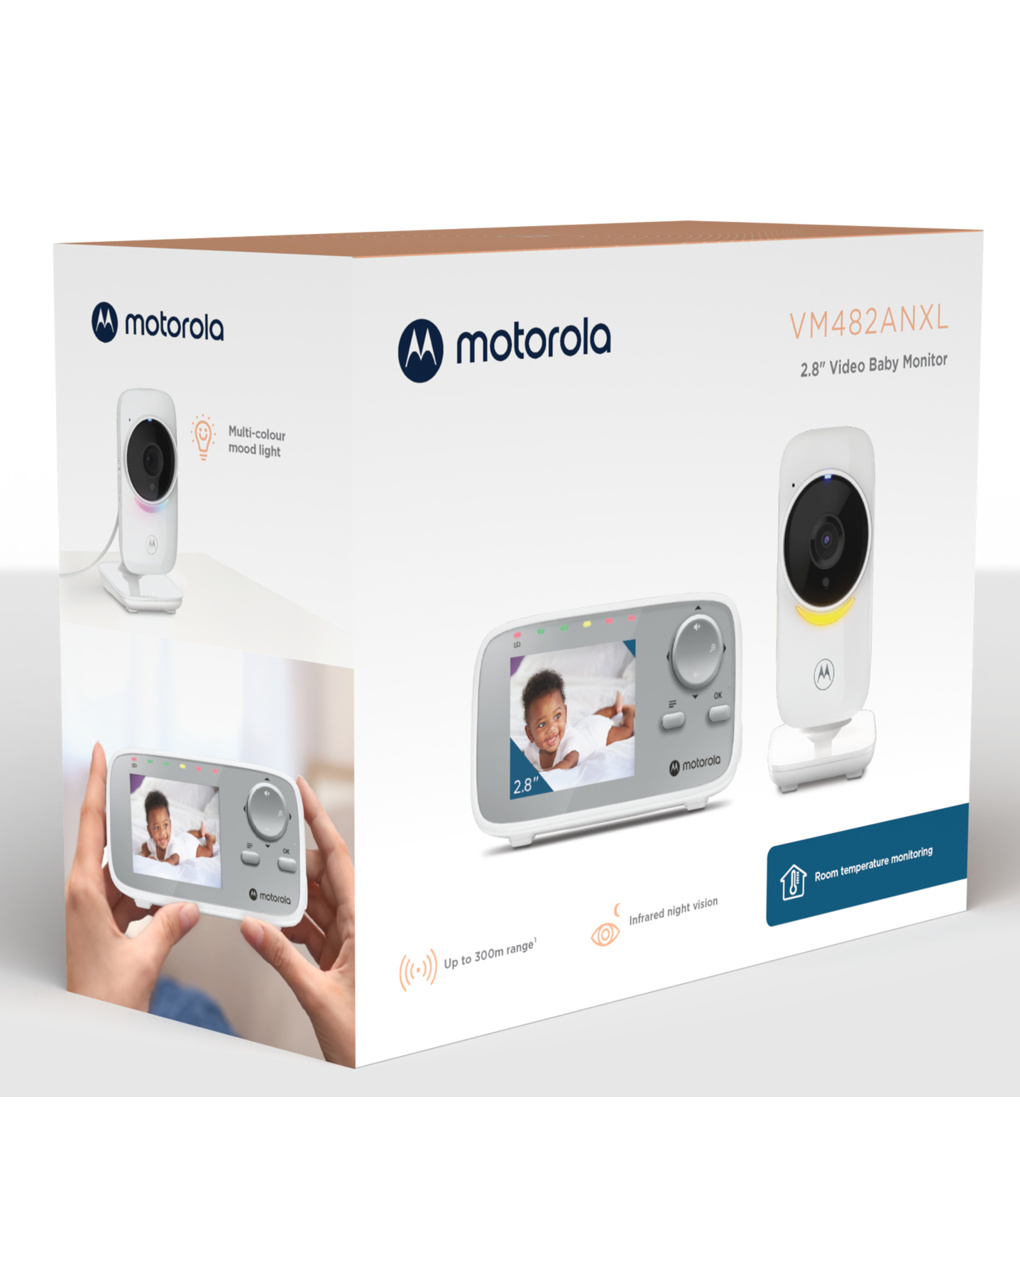 Baby monitor vm 482anxl 2,8" - motorola - Motorola